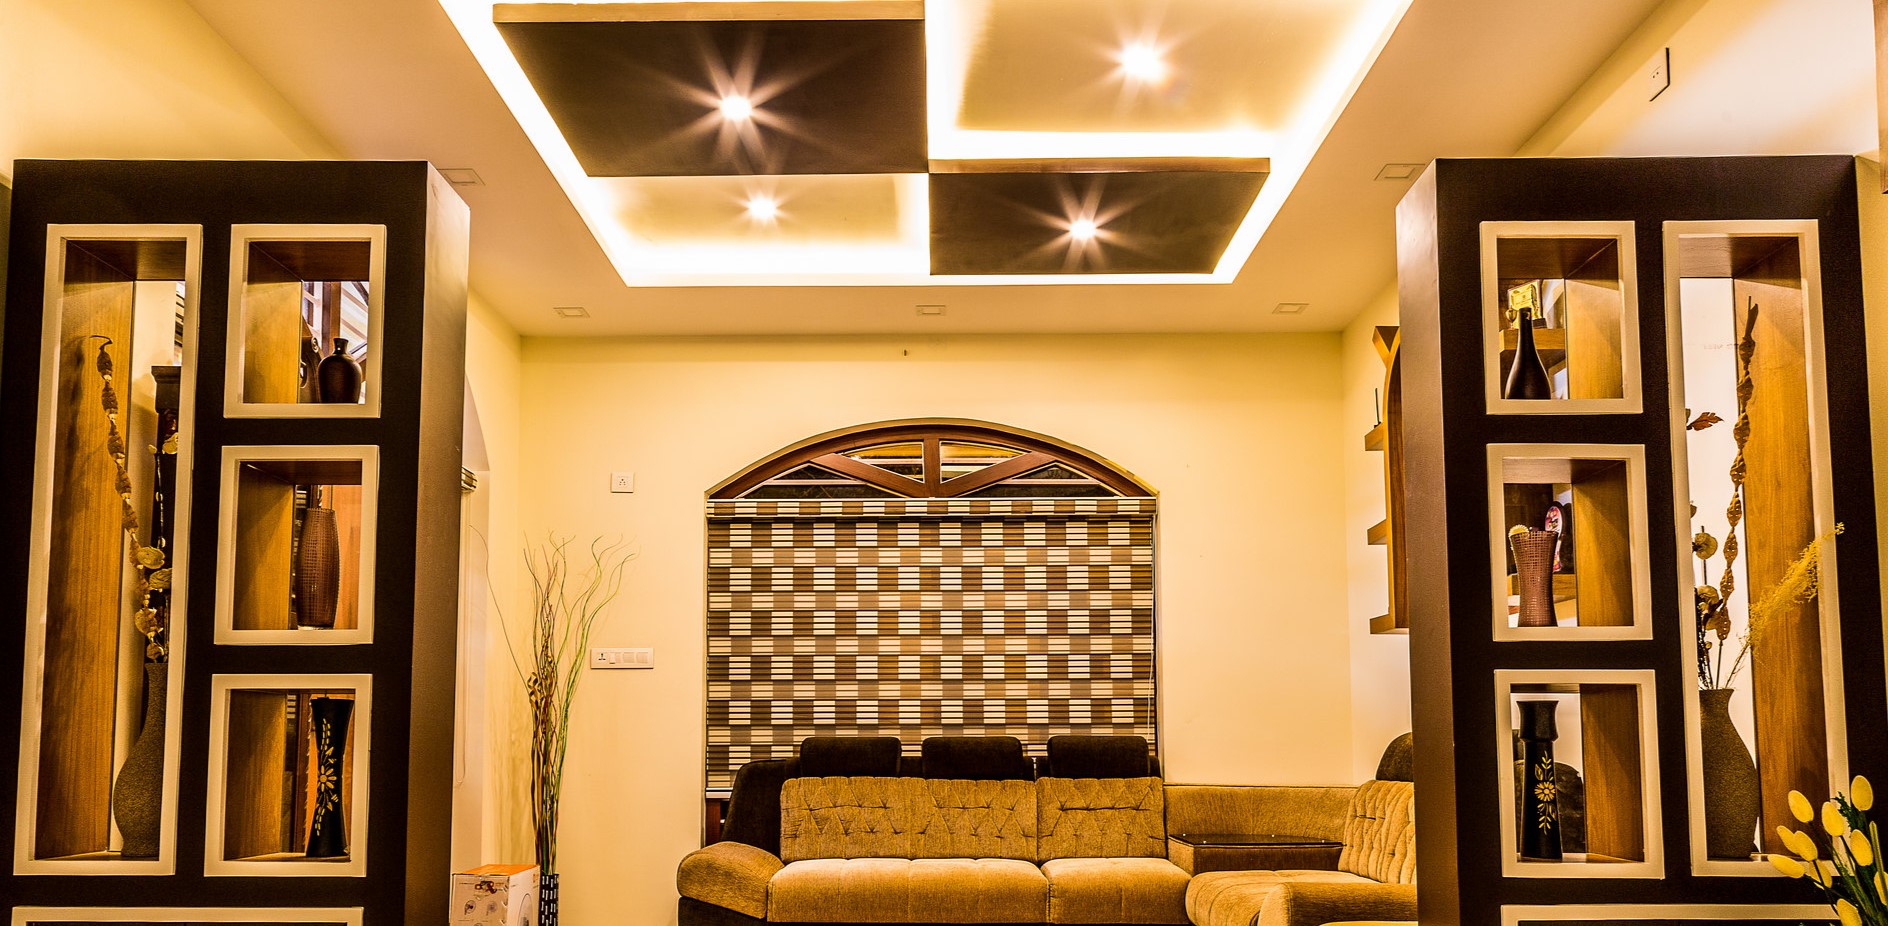 Светодиодные лампочки можно использовать для создания яркого освещения в гостиной